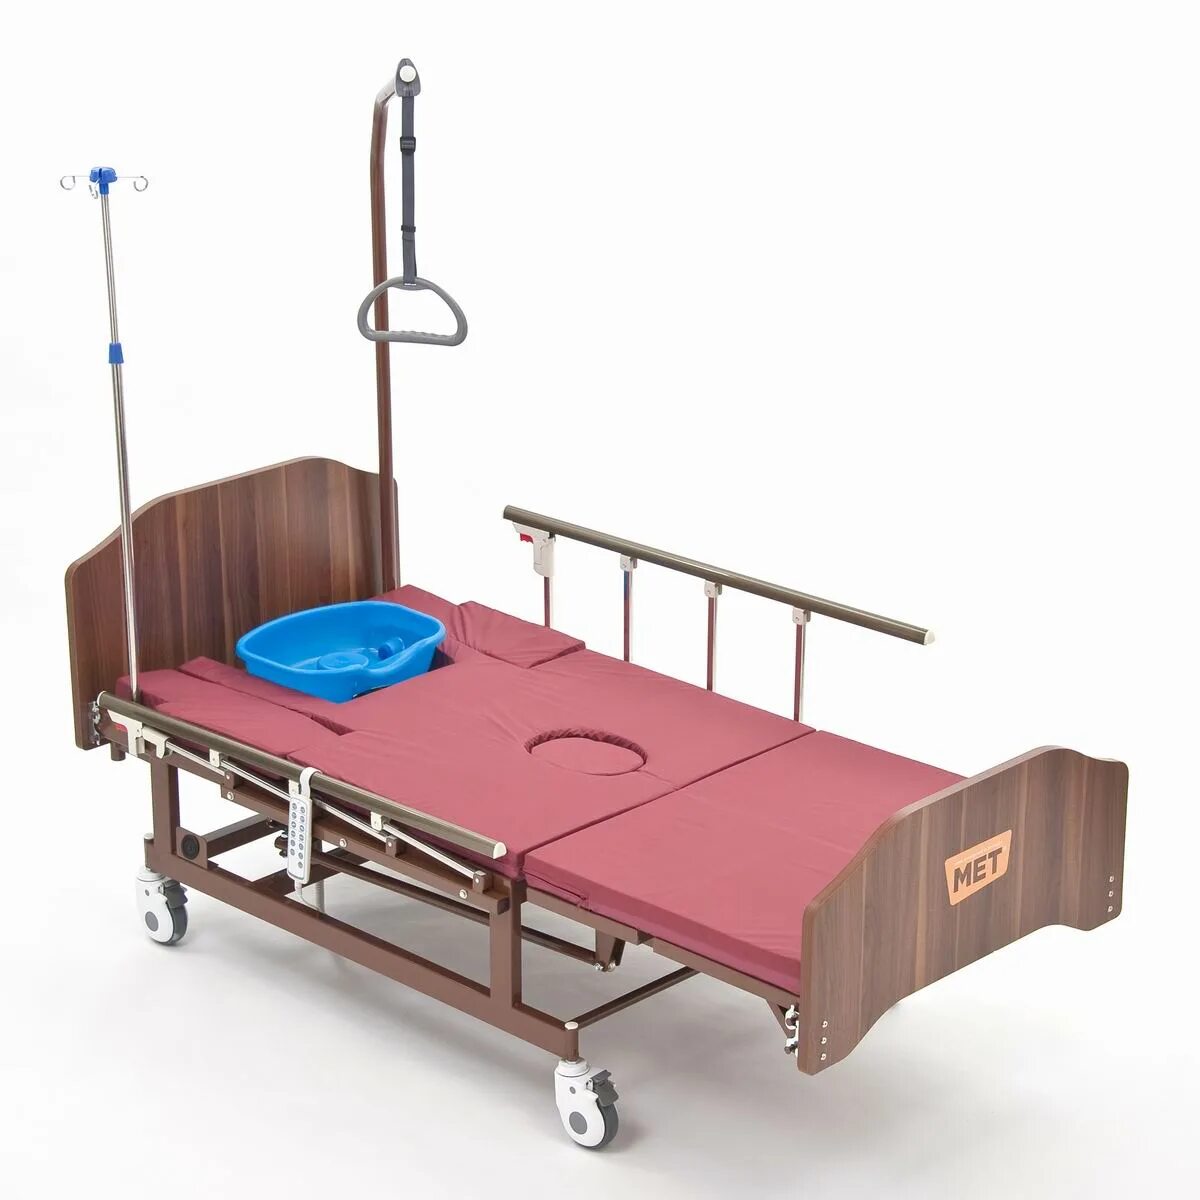 Кровать функциональная медицинская Bly-1. Кровать медицинская электрическая с туалетным устройством met Revel. Кровать электрическая Bly-1 (met Revel. Кровать медицинская функциональная с матрасом Bly-1 (met remeks).